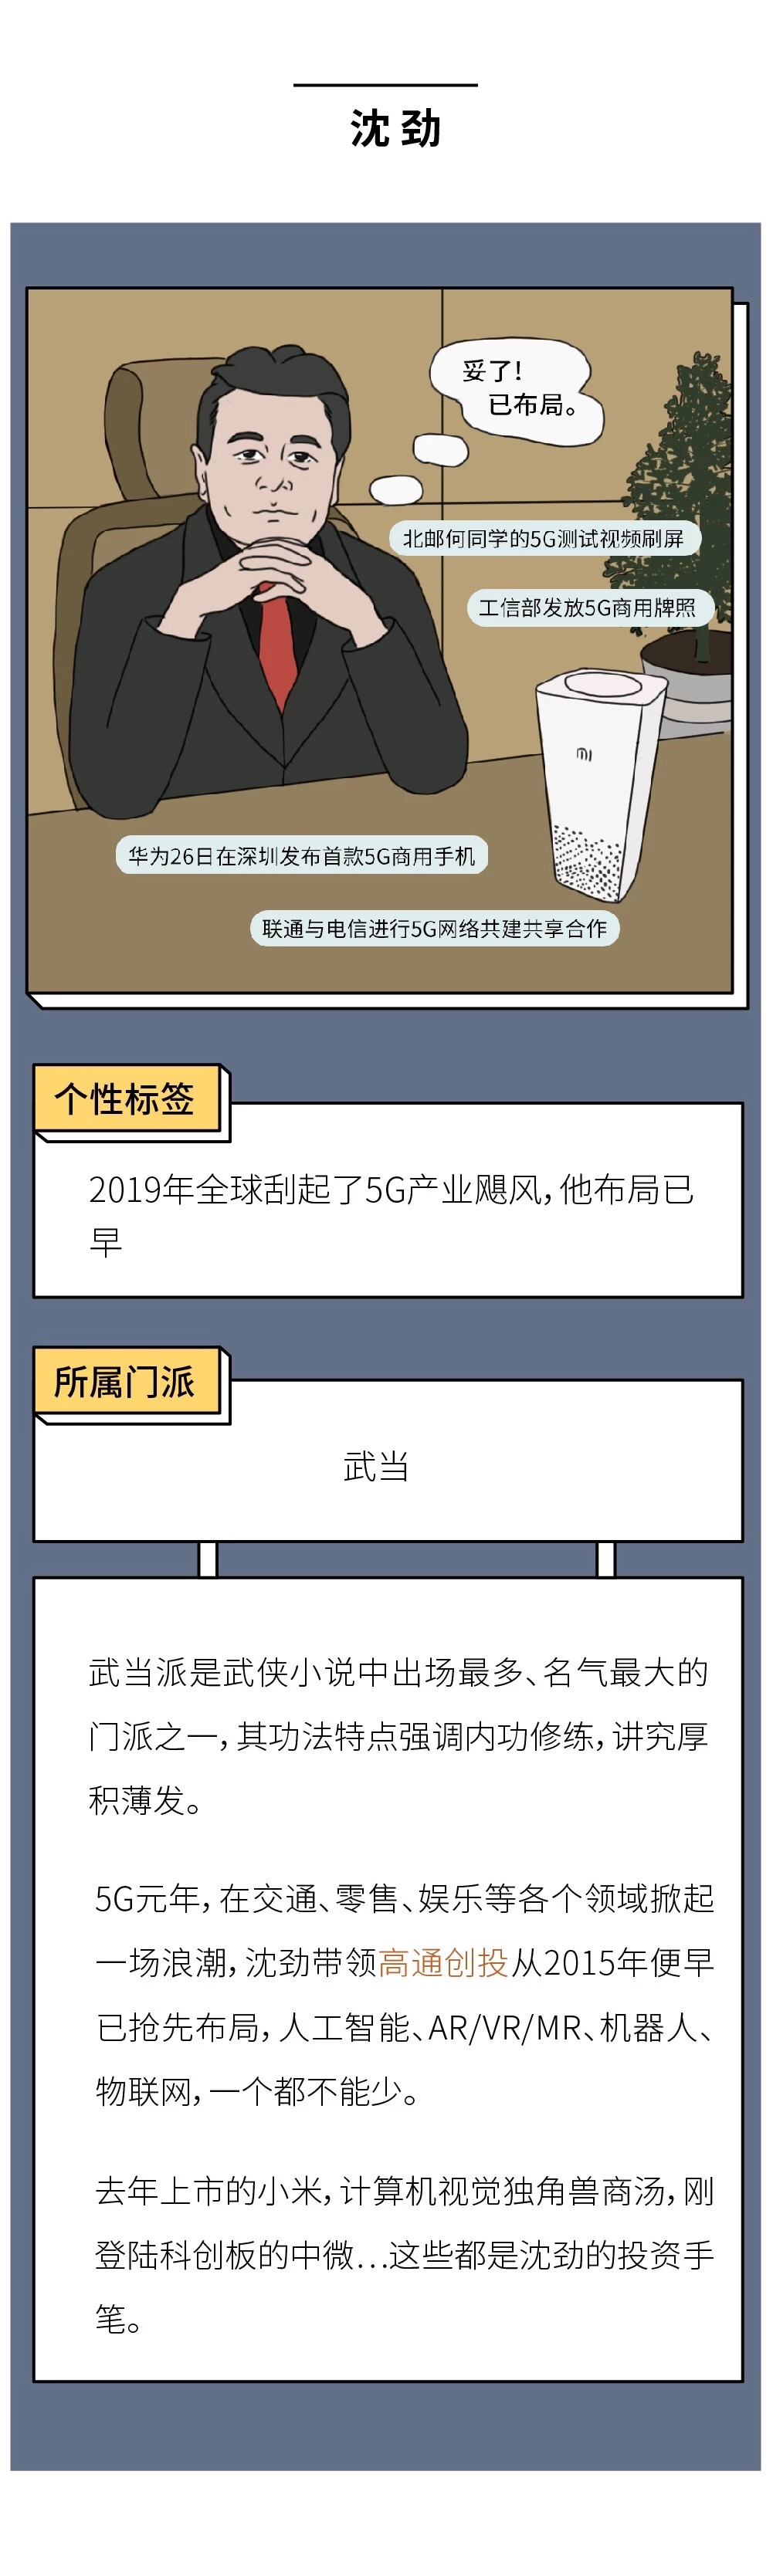 中国造风VC图鉴3.jpg